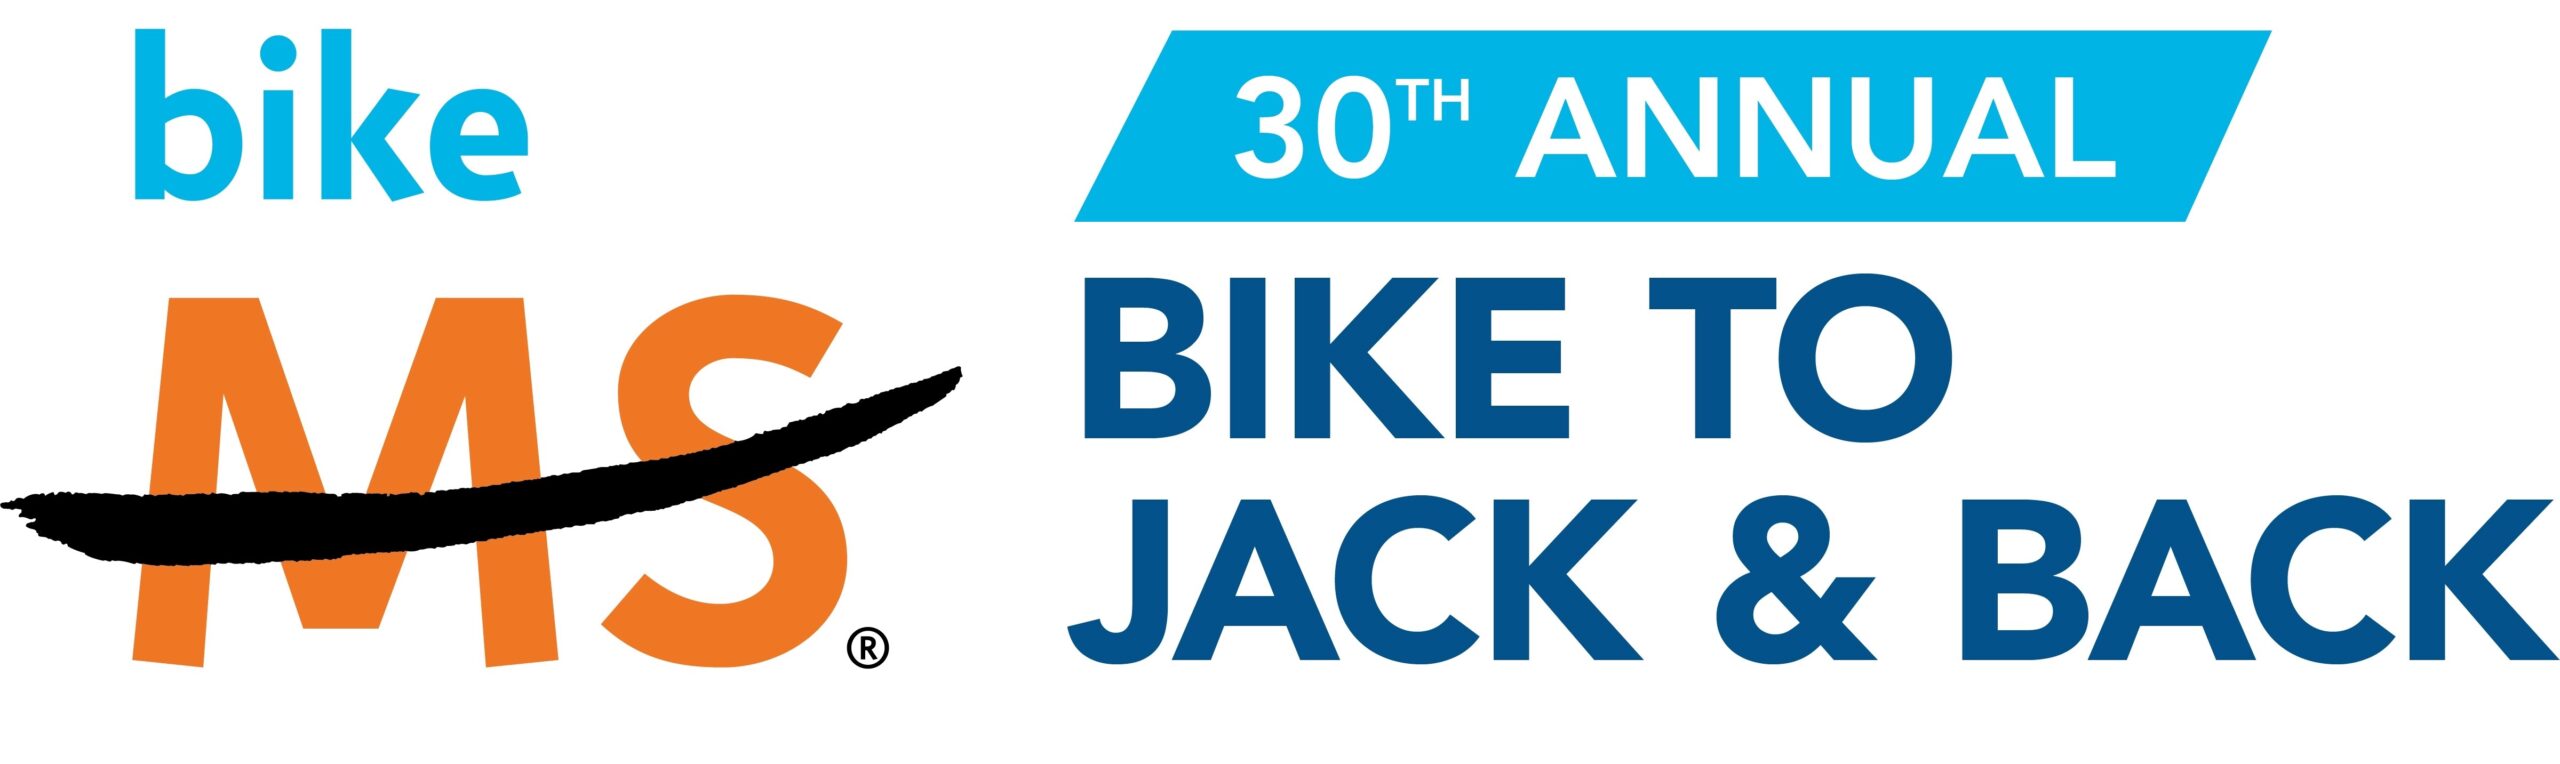 Bike MS - Bike to Jack & Back.